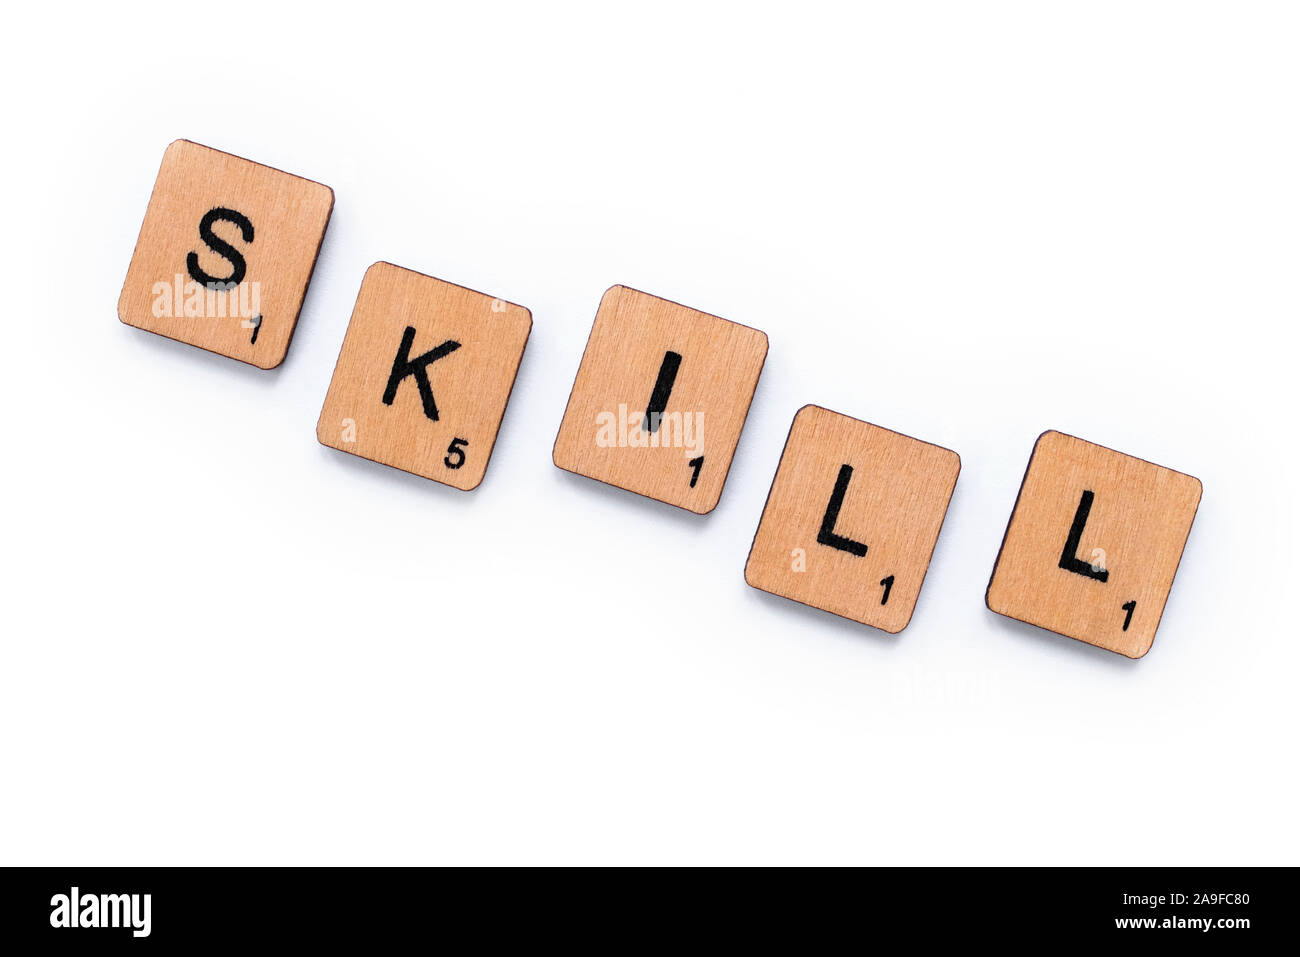 London, UK, 12. Juni 2019: Das Wort "Skill", Dinkel mit hölzernen Buchstabensteine über einem weißen Hintergrund. Stockfoto